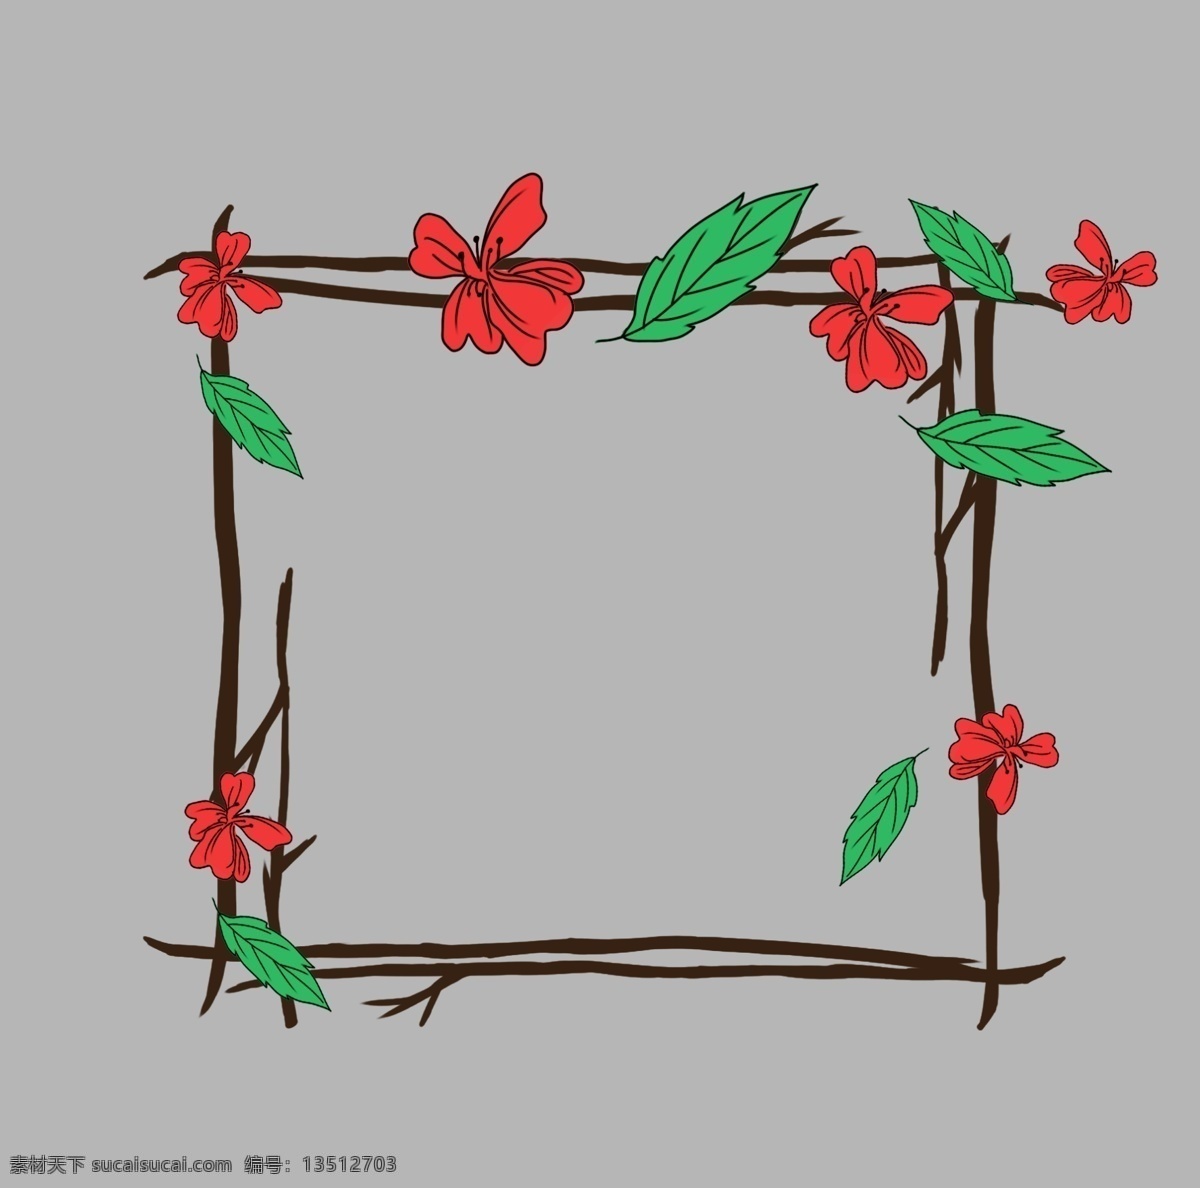 卡通 红色 花朵 边框 卡通边框 红色花朵边框 正方形边框 边框装饰 植物边框 绿叶装饰 叶子边框